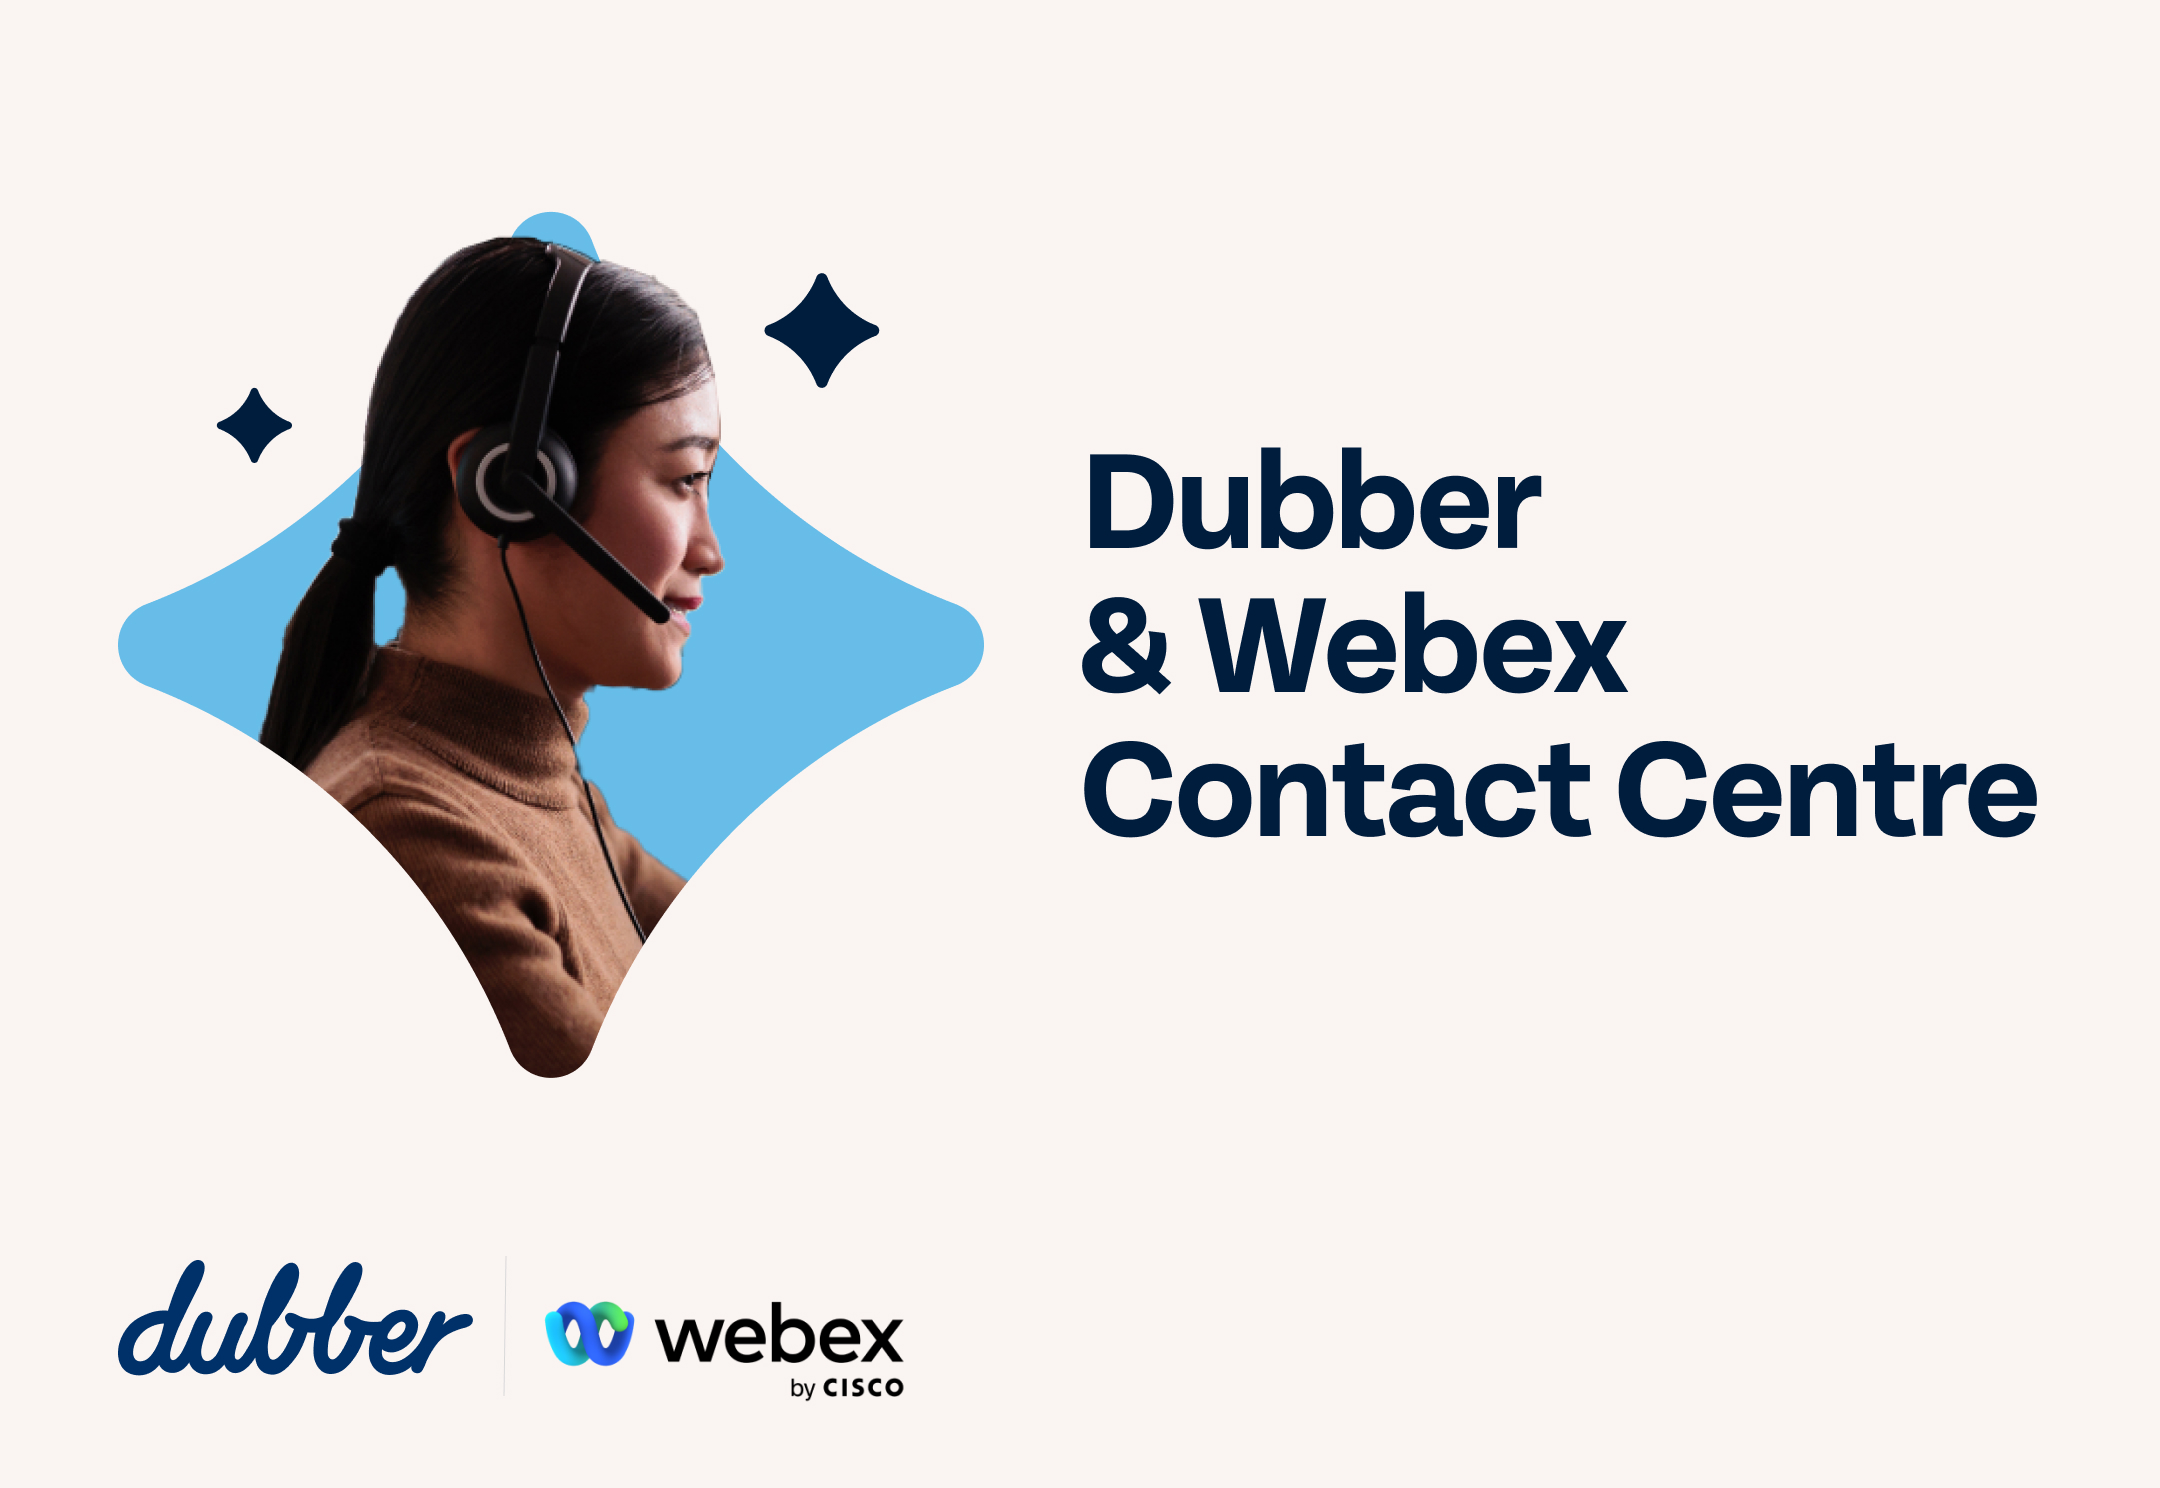 Dubber & Webex Contact Centre